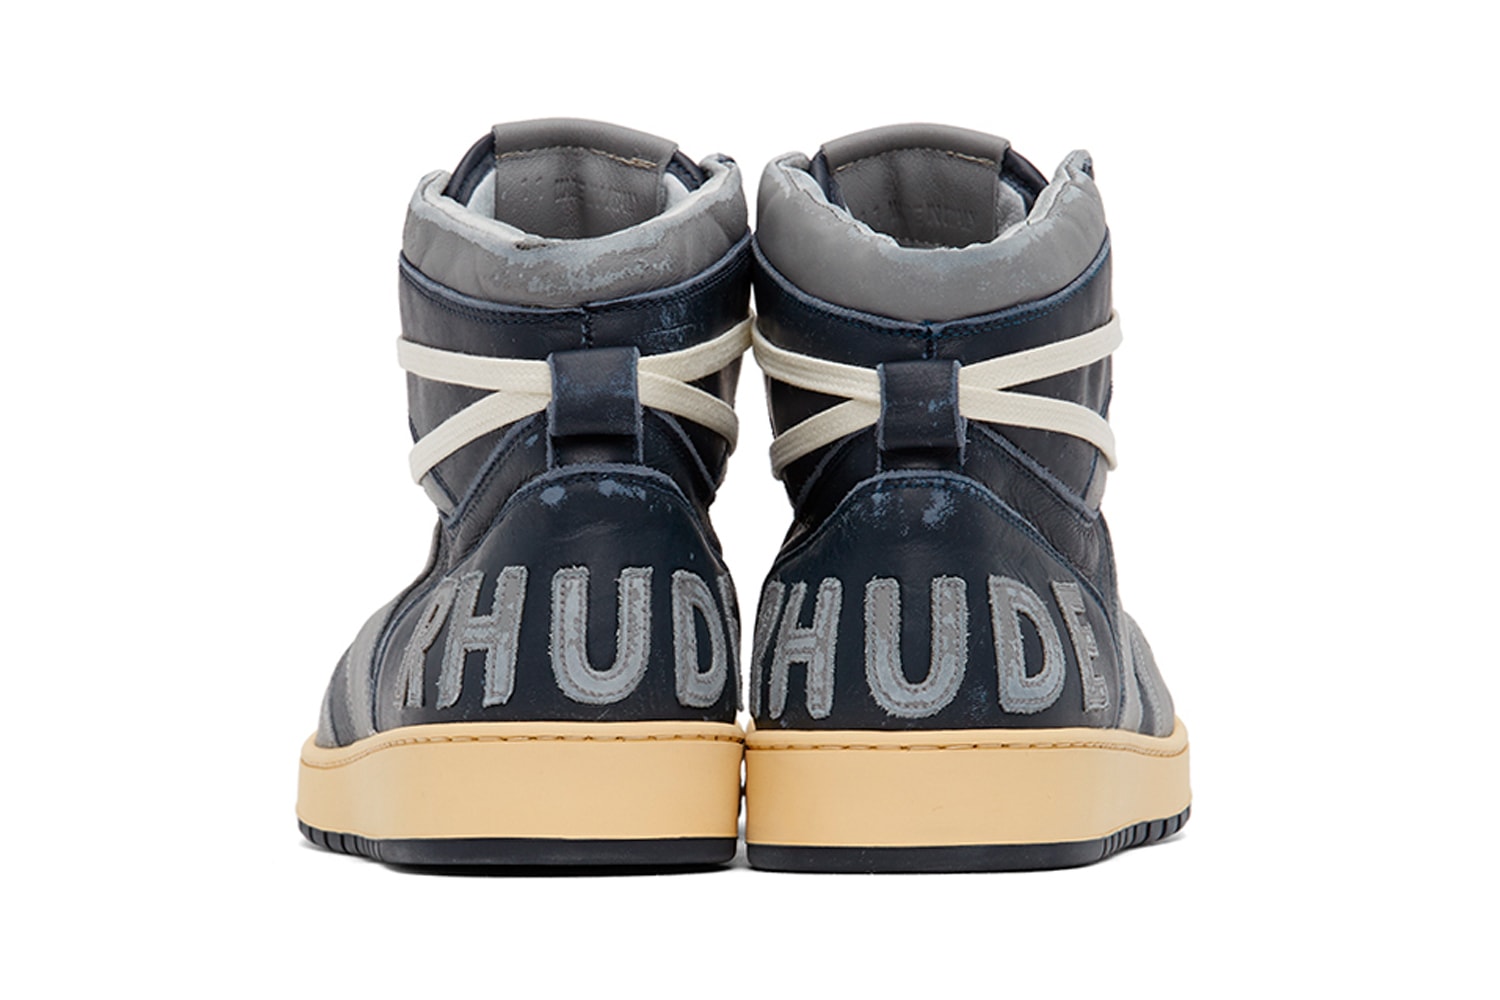 RHUDE Rhecess Hi Sneakers Georgetown Release Grey Navy Rhuigi SSENSE Info